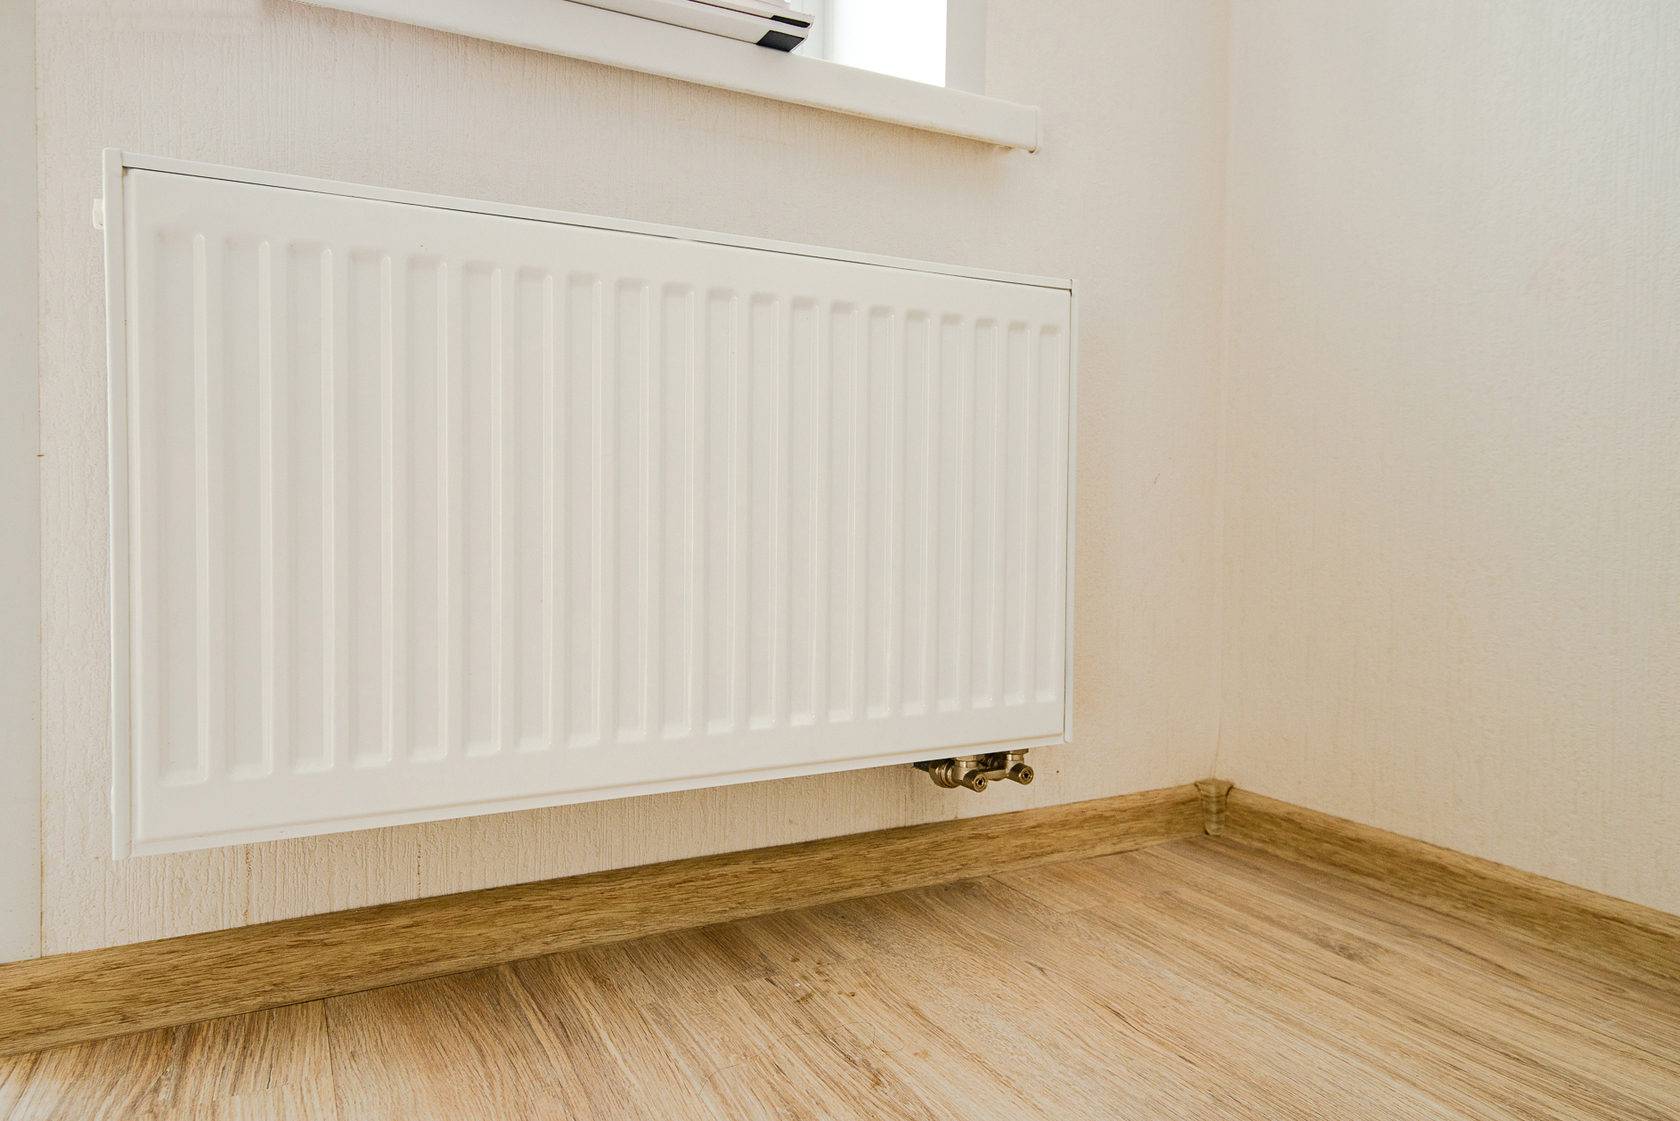 Характеристики и особенности эксплуатации панельных радиаторов purmo (пурмо) для отопления дома и цена